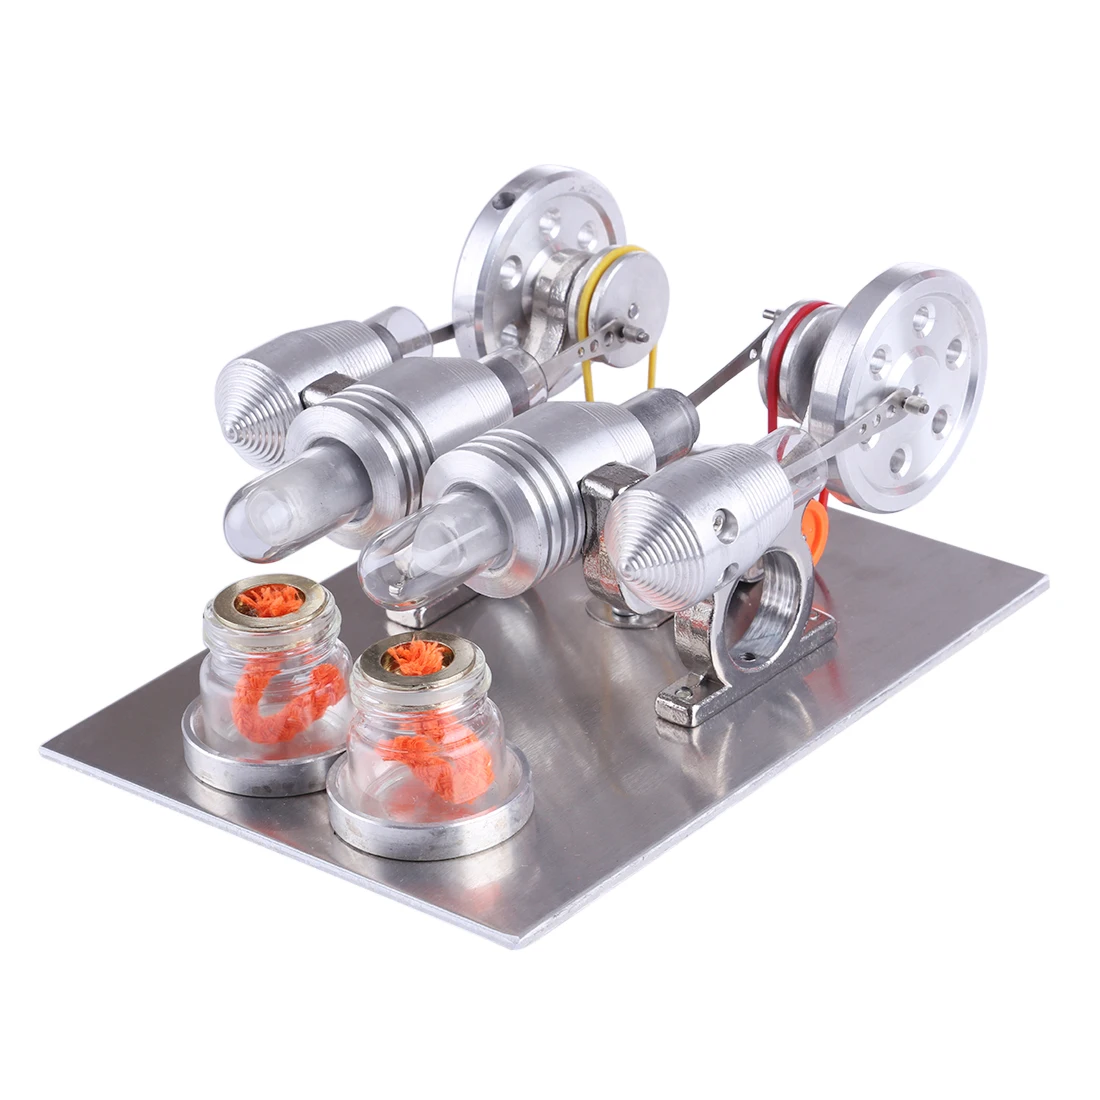 Двойной цилиндр Модель двигателя Стирлинга здание образования игрушка с 2 шт 12 V 5 W светодиодный лампы школьной физики класса демонстрации